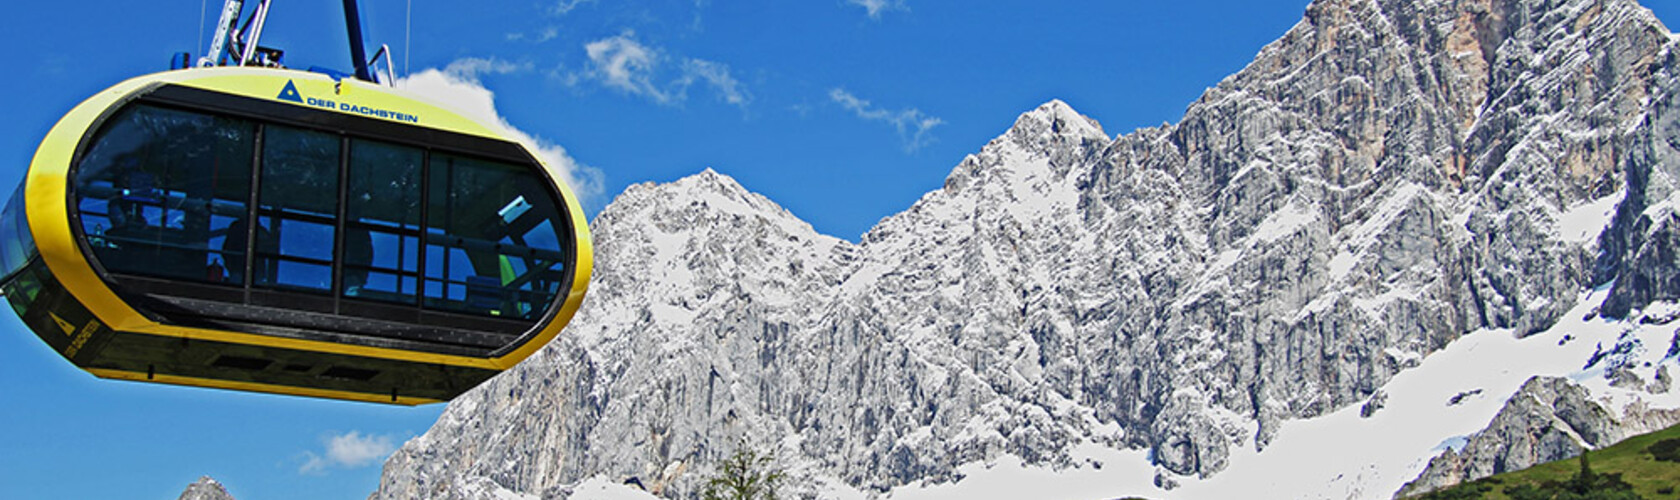 Panoramagondel mit Dachsteinmassiv im Hintergrund | © Mediadome/Christoph Buchegger